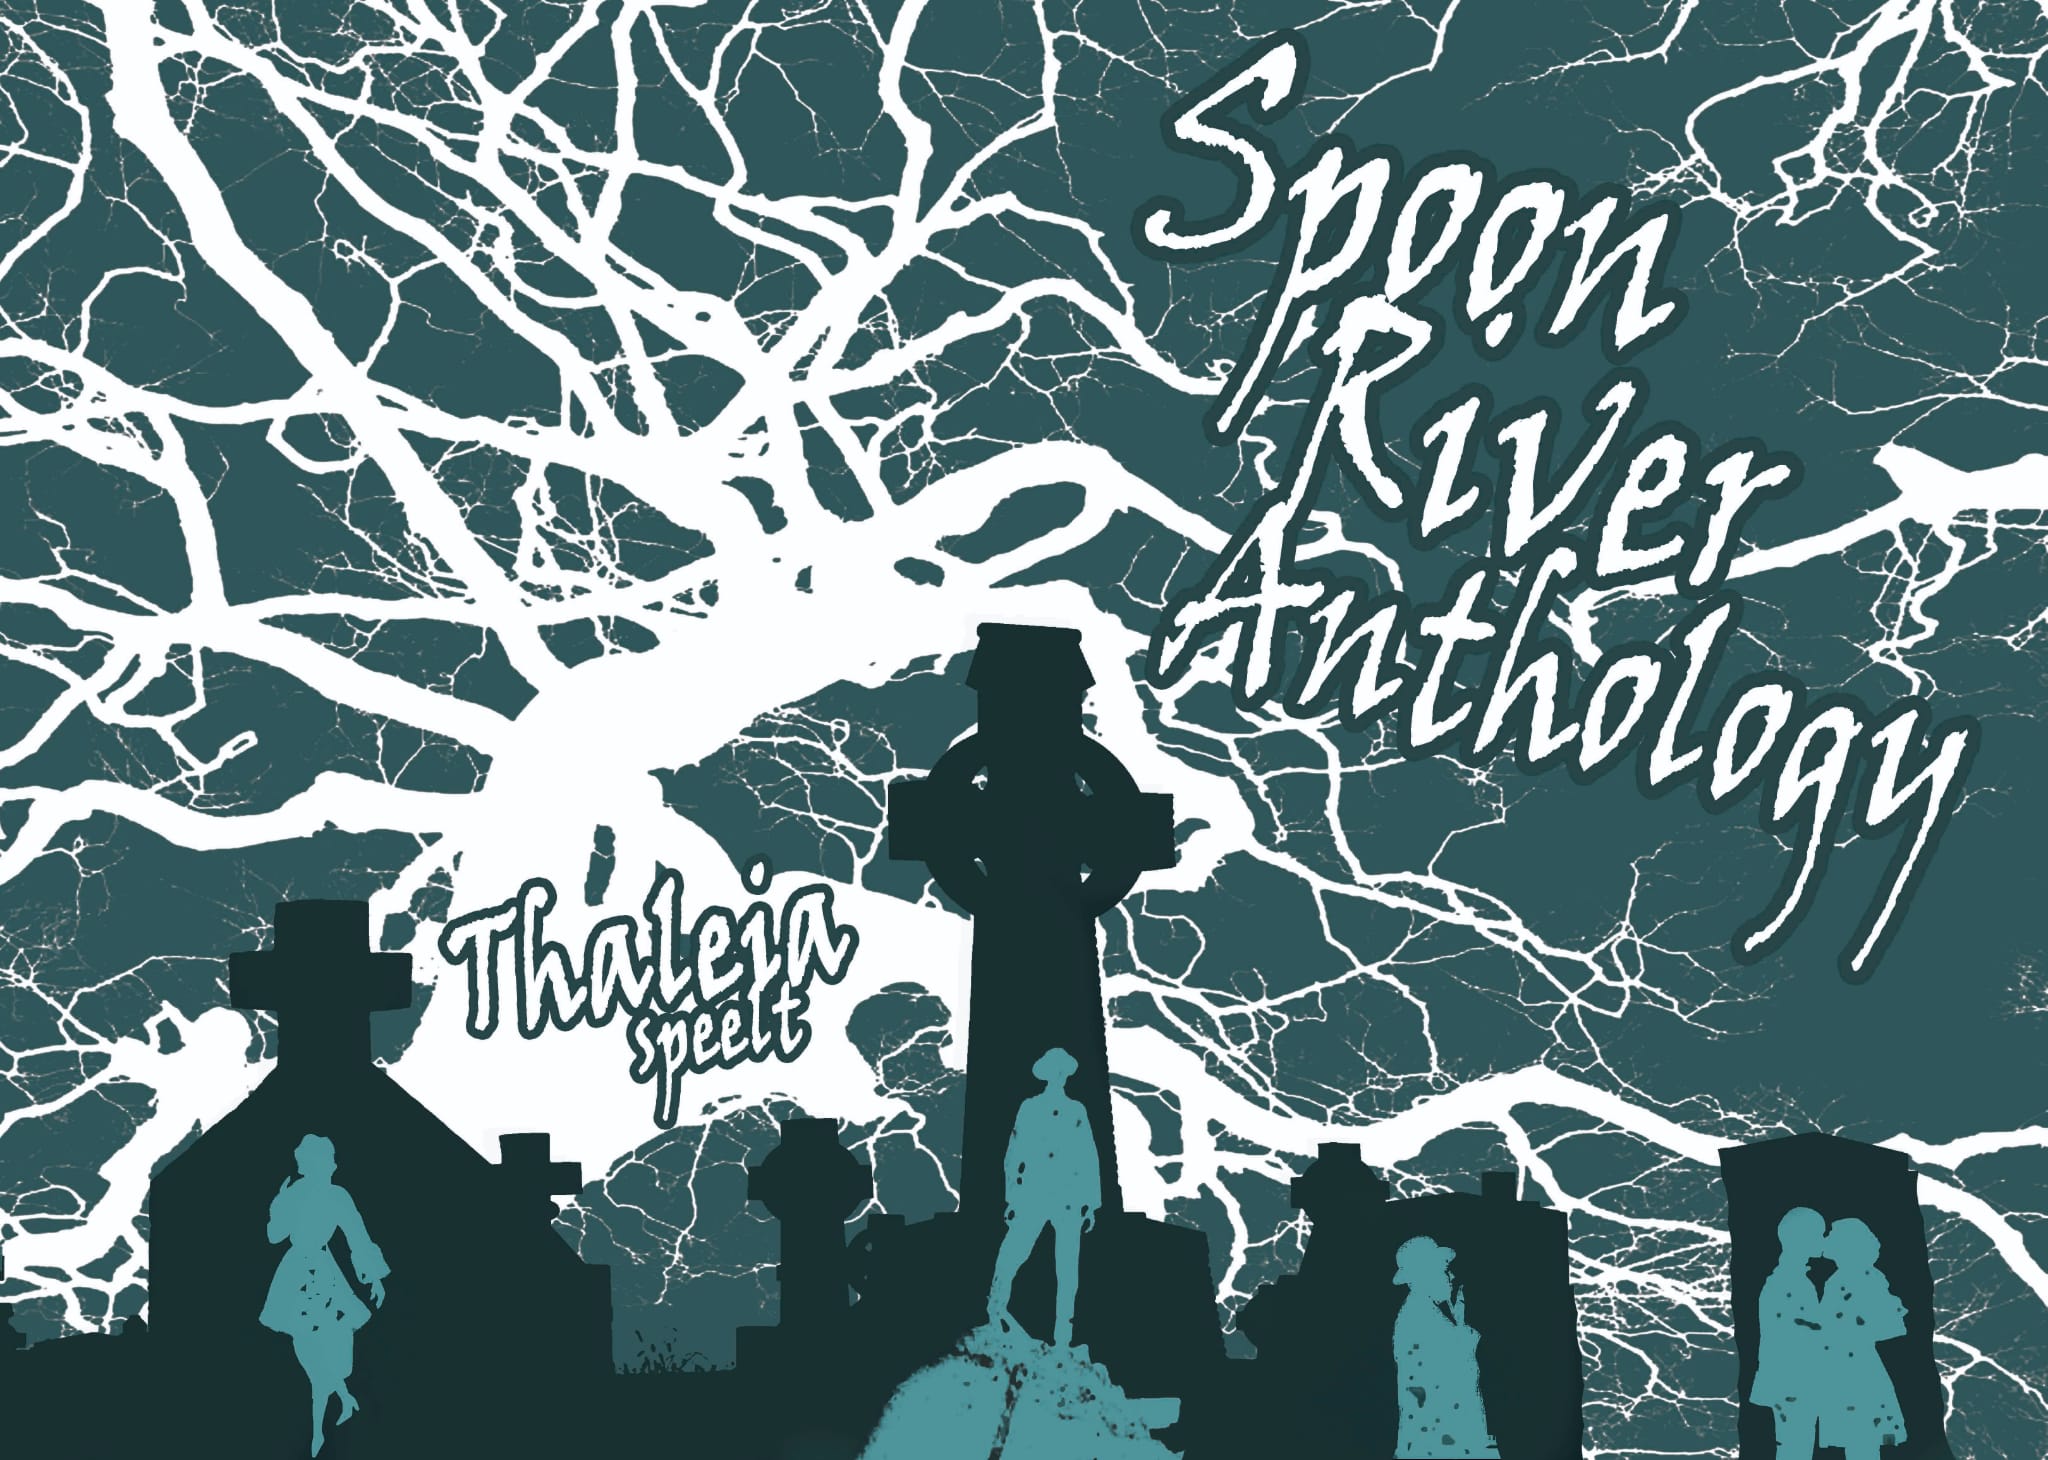 voorkant van de flyer van Spoon river Anthology